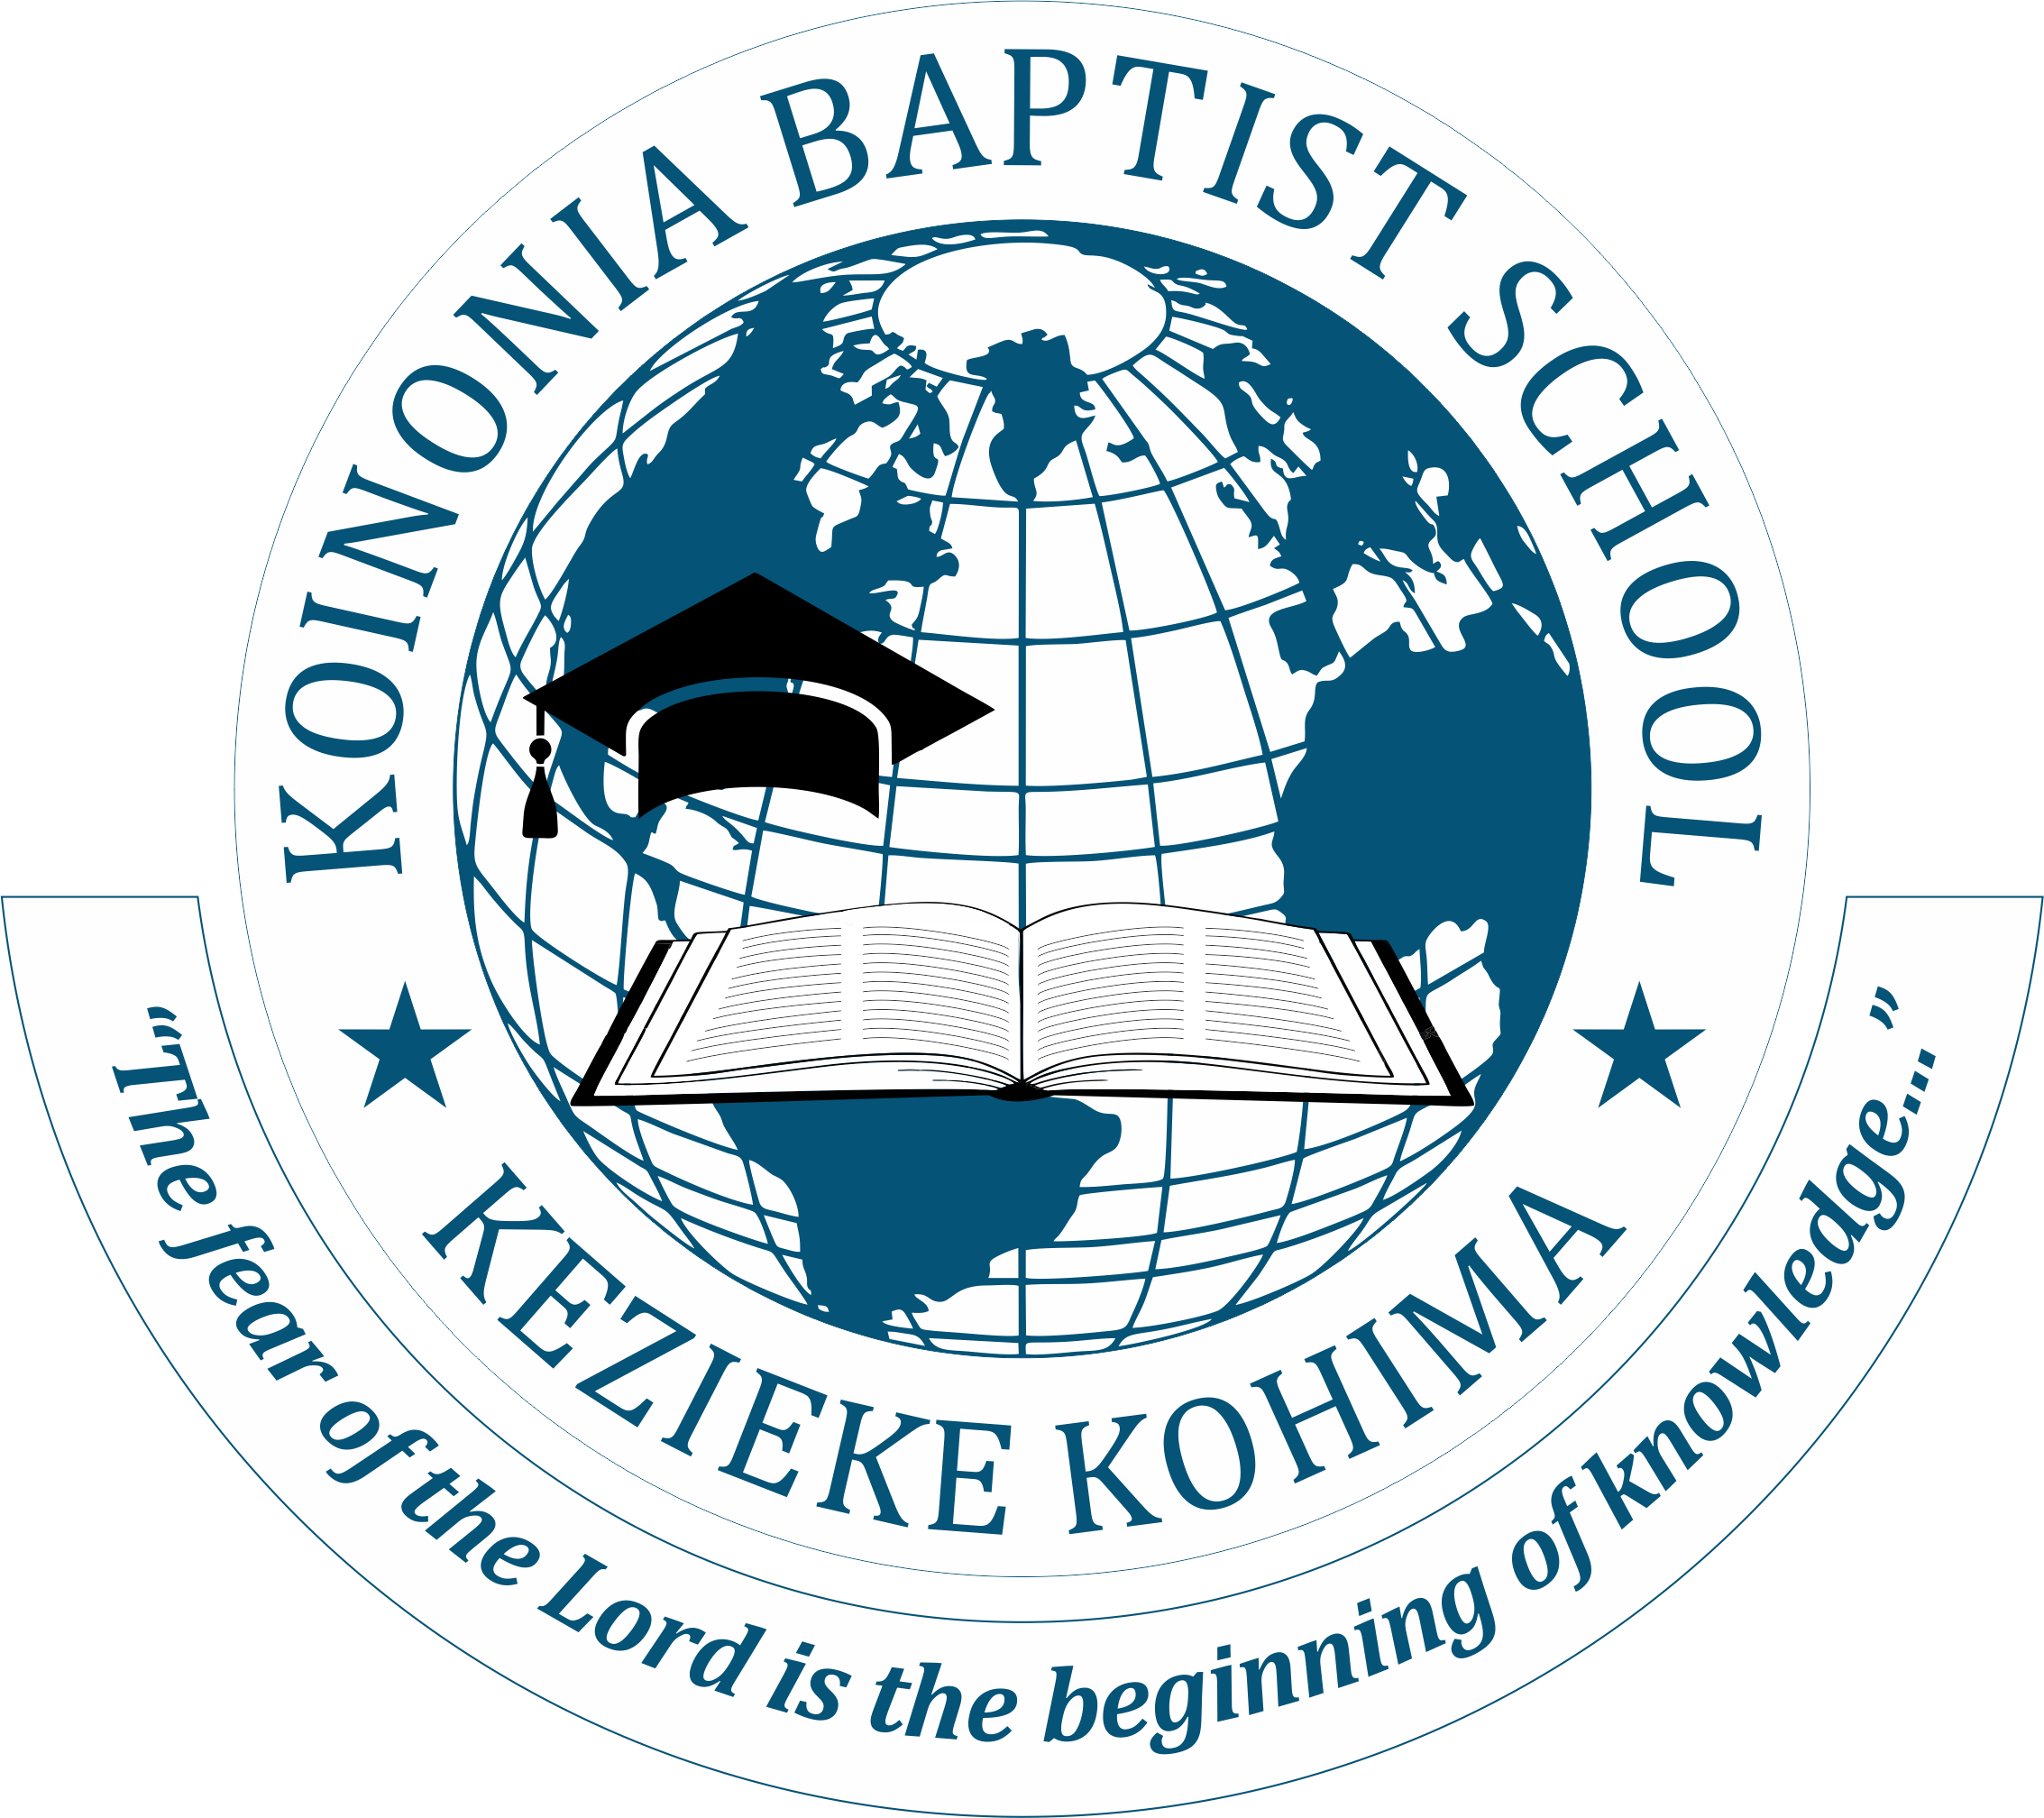 Koinonia Baptist School